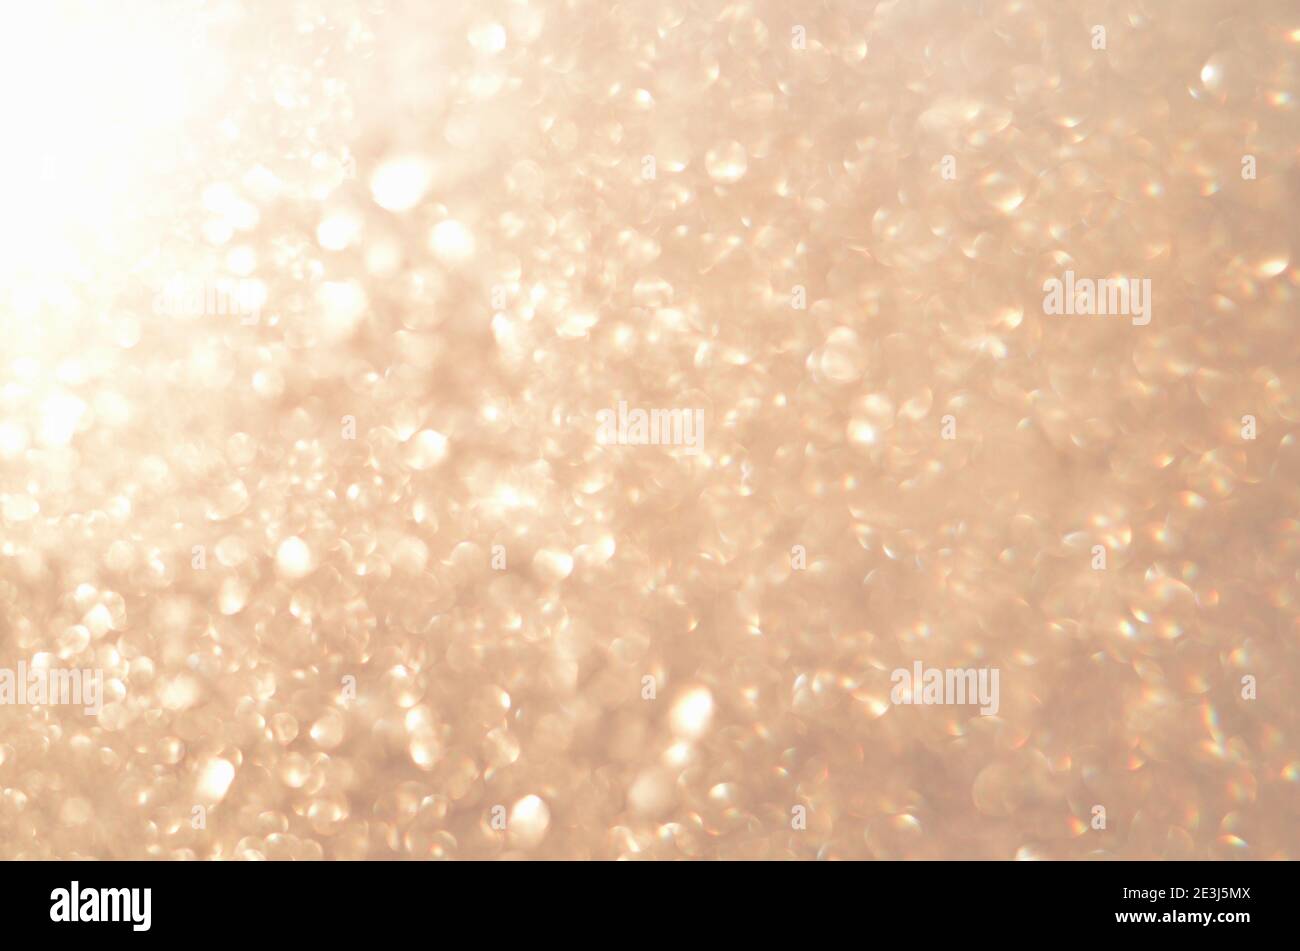 Sfondo glitterato astratto con luce dorata soffusa e sfocata. Immagine sfocata. Foto Stock